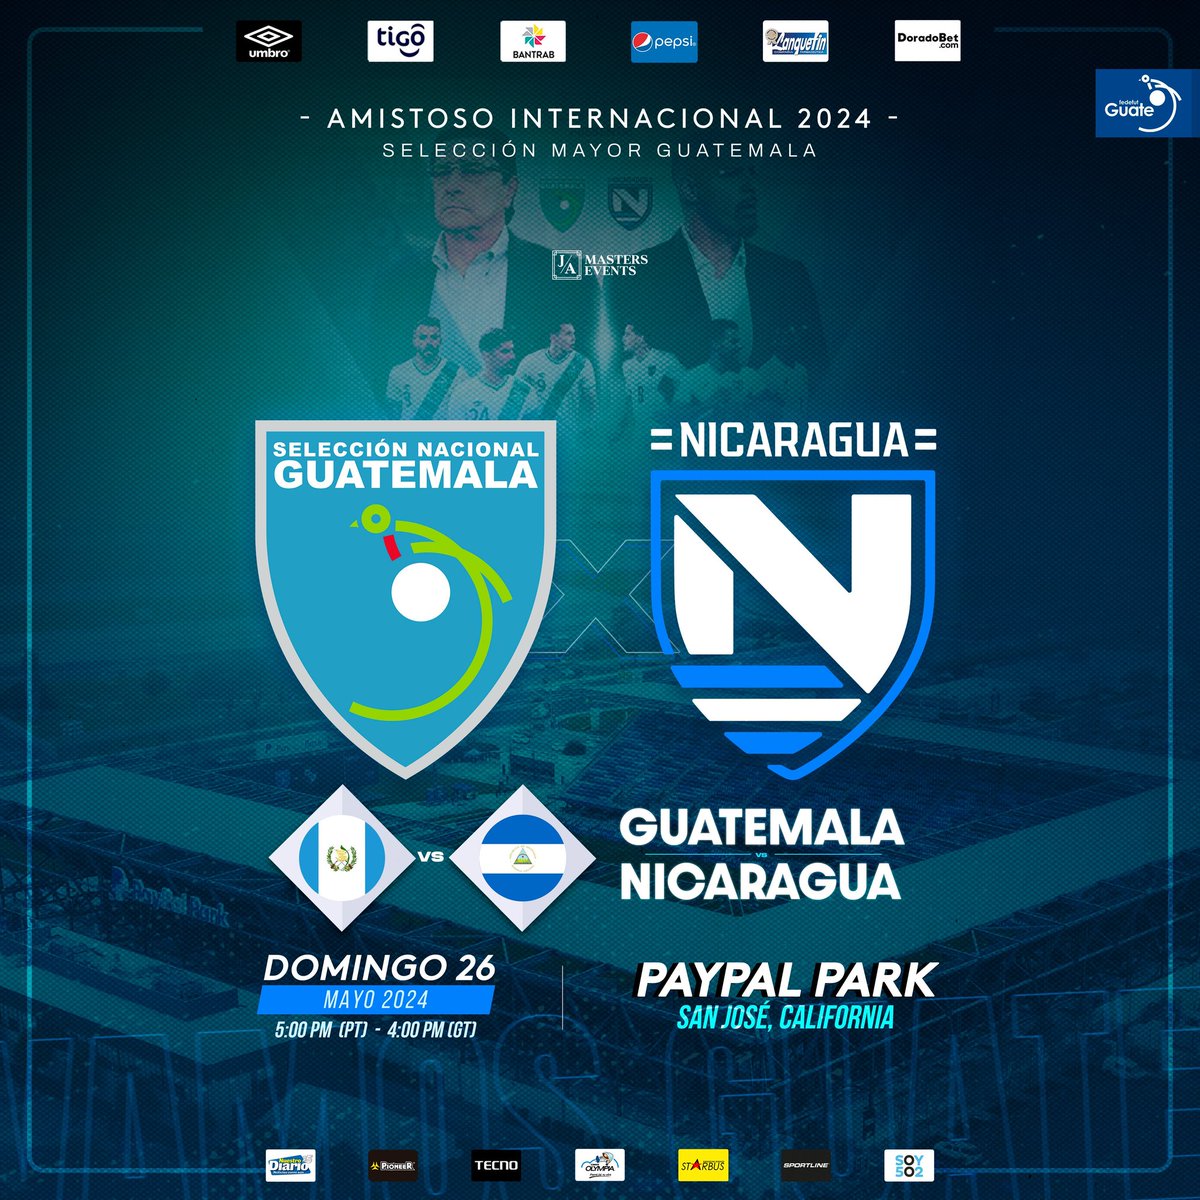 #LaSele jugará un partido de preparación ante Nicaragua previo a la Eliminatoria Mundialista

🇬🇹ɢᴜᴀᴛᴇᴍᴀʟᴀ 🆚 ɴɪᴄᴀʀᴀɢᴜᴀ 🇳🇮
🗓️ 26 de Mayo
🏟️ PayPal Park 
📍San José, California 

#JugamosTodos 🇬🇹